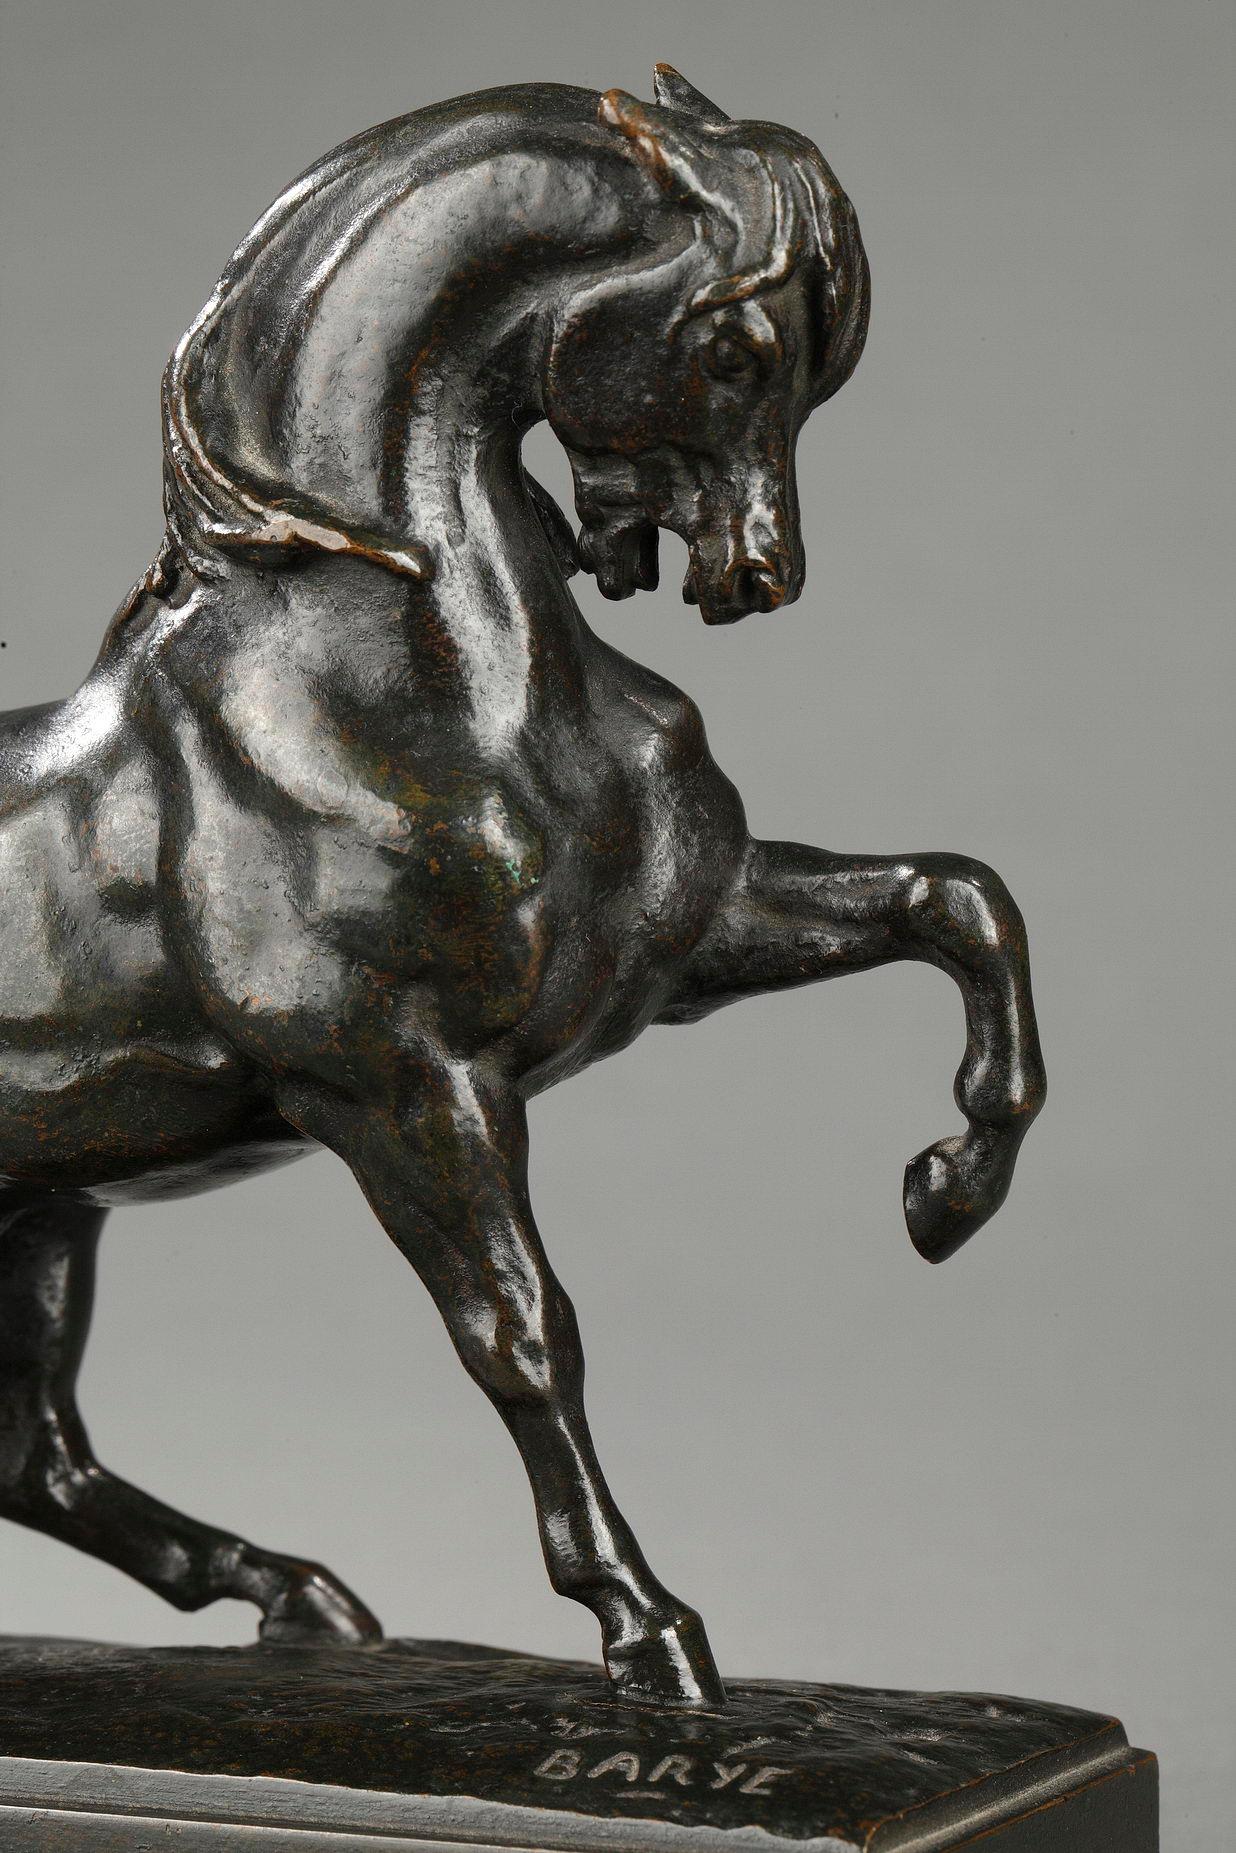 Turkish Horse
by Antoine-Louis BARYE (1796-1875)

